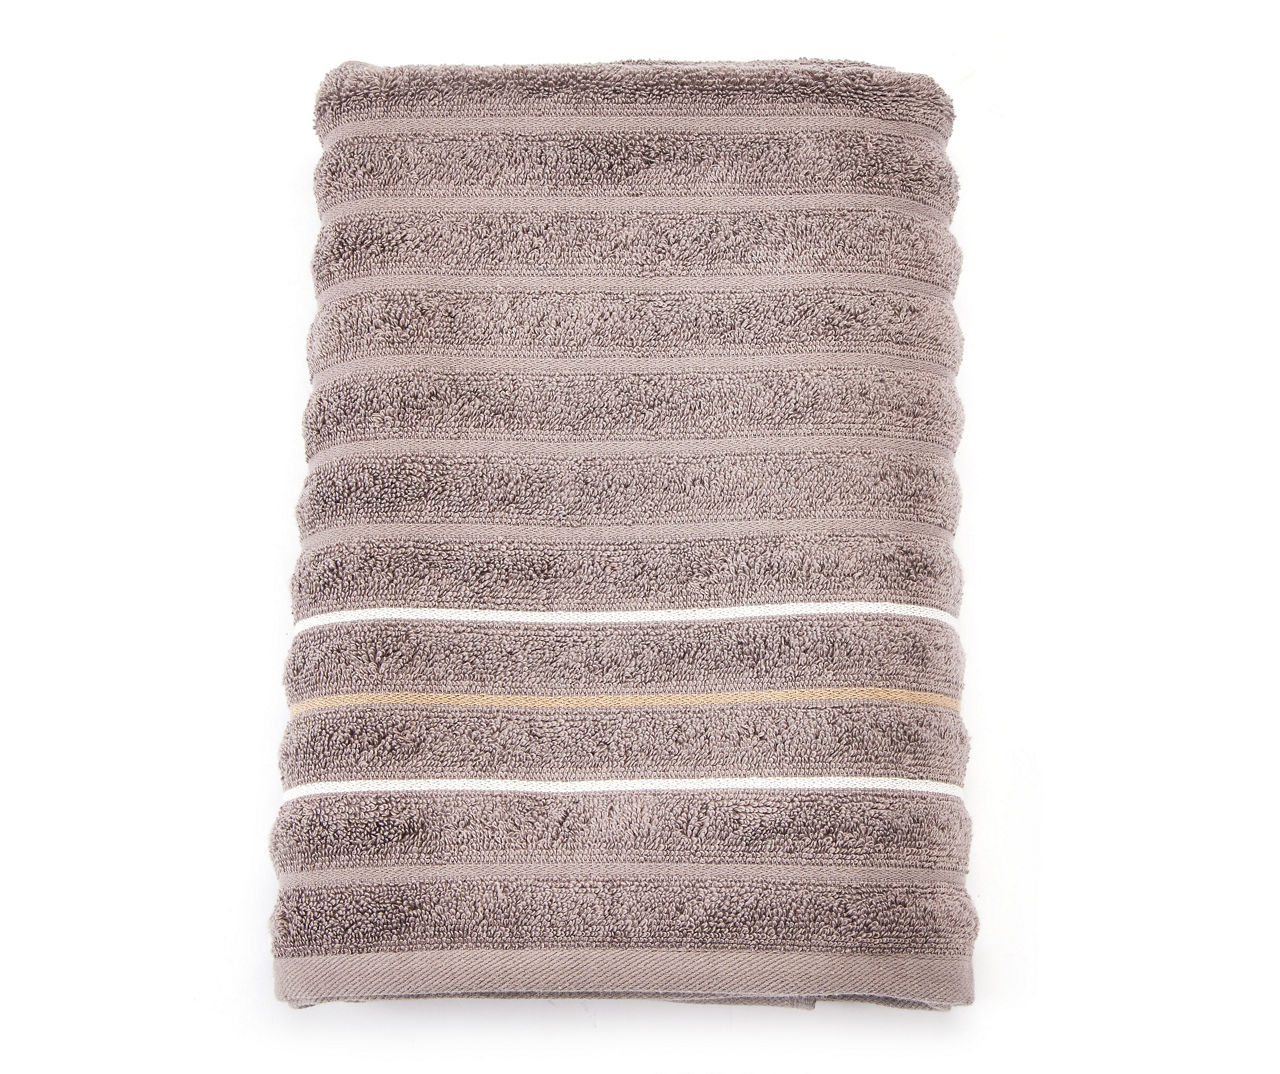 Somanic Gray & White Stripe Bath Towel